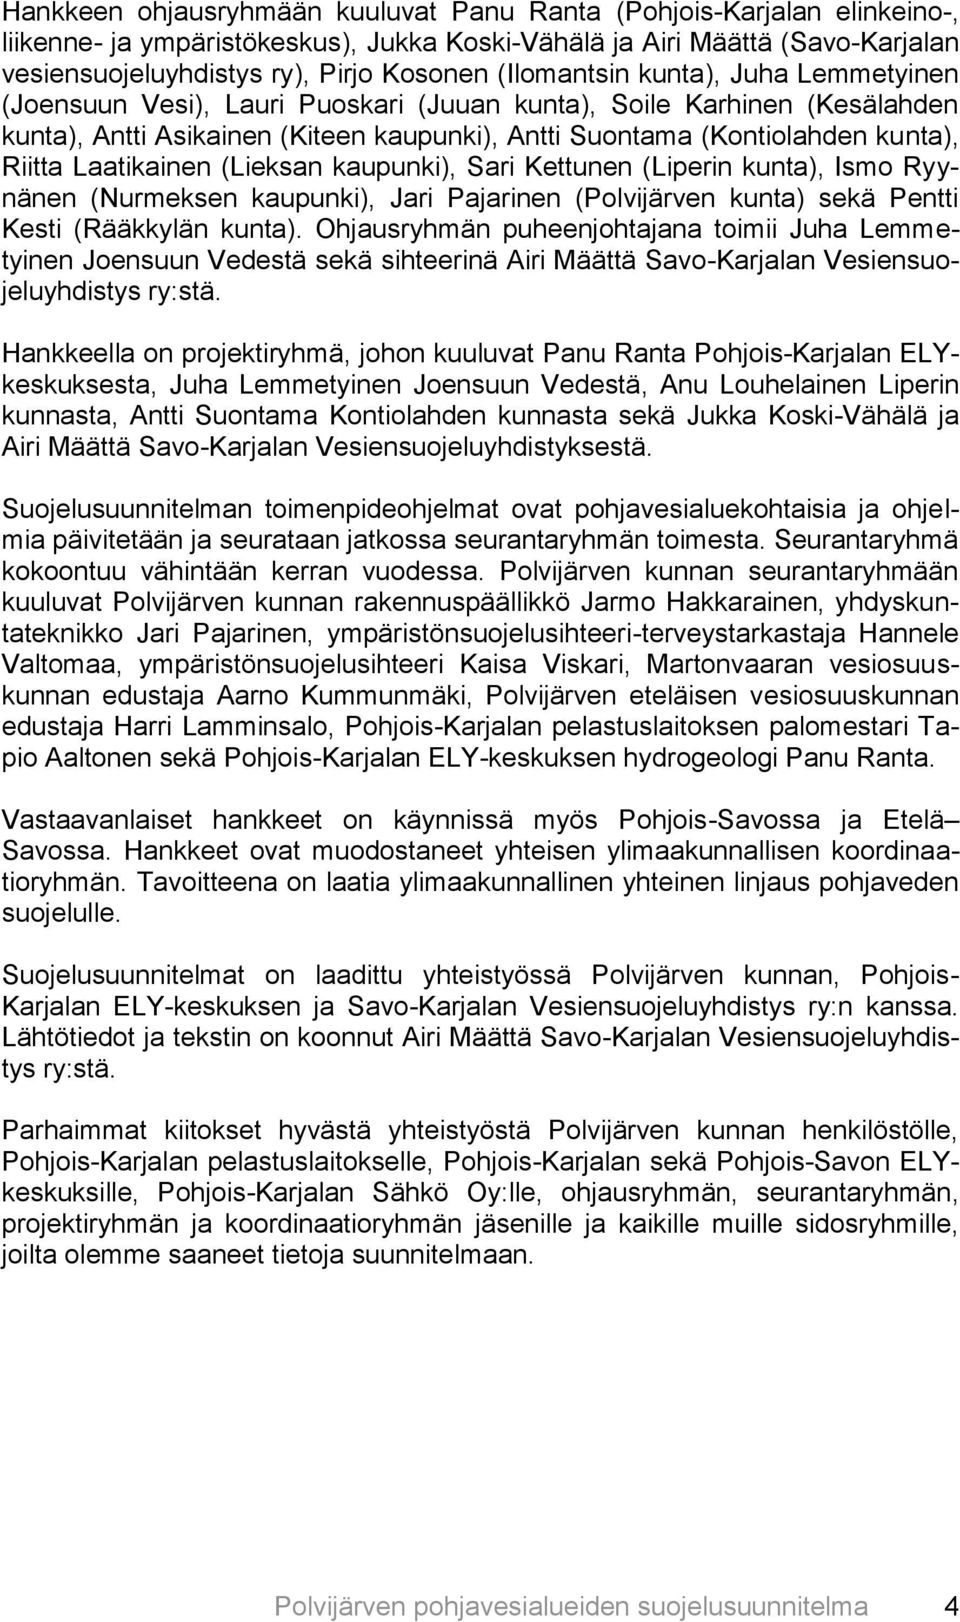 Laatikainen (Lieksan kaupunki), Sari Kettunen (Liperin kunta), Ismo Ryynänen (Nurmeksen kaupunki), Jari Pajarinen (Polvijärven kunta) sekä Pentti Kesti (Rääkkylän kunta).